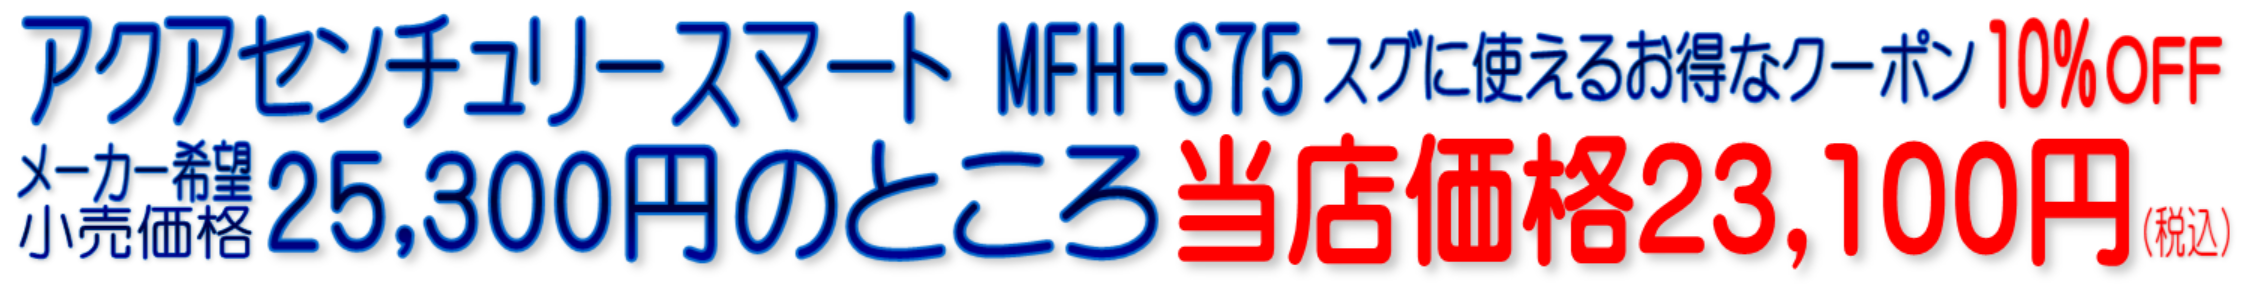 MFH-S75 C-MFH-KT アクアセンチュリースマート